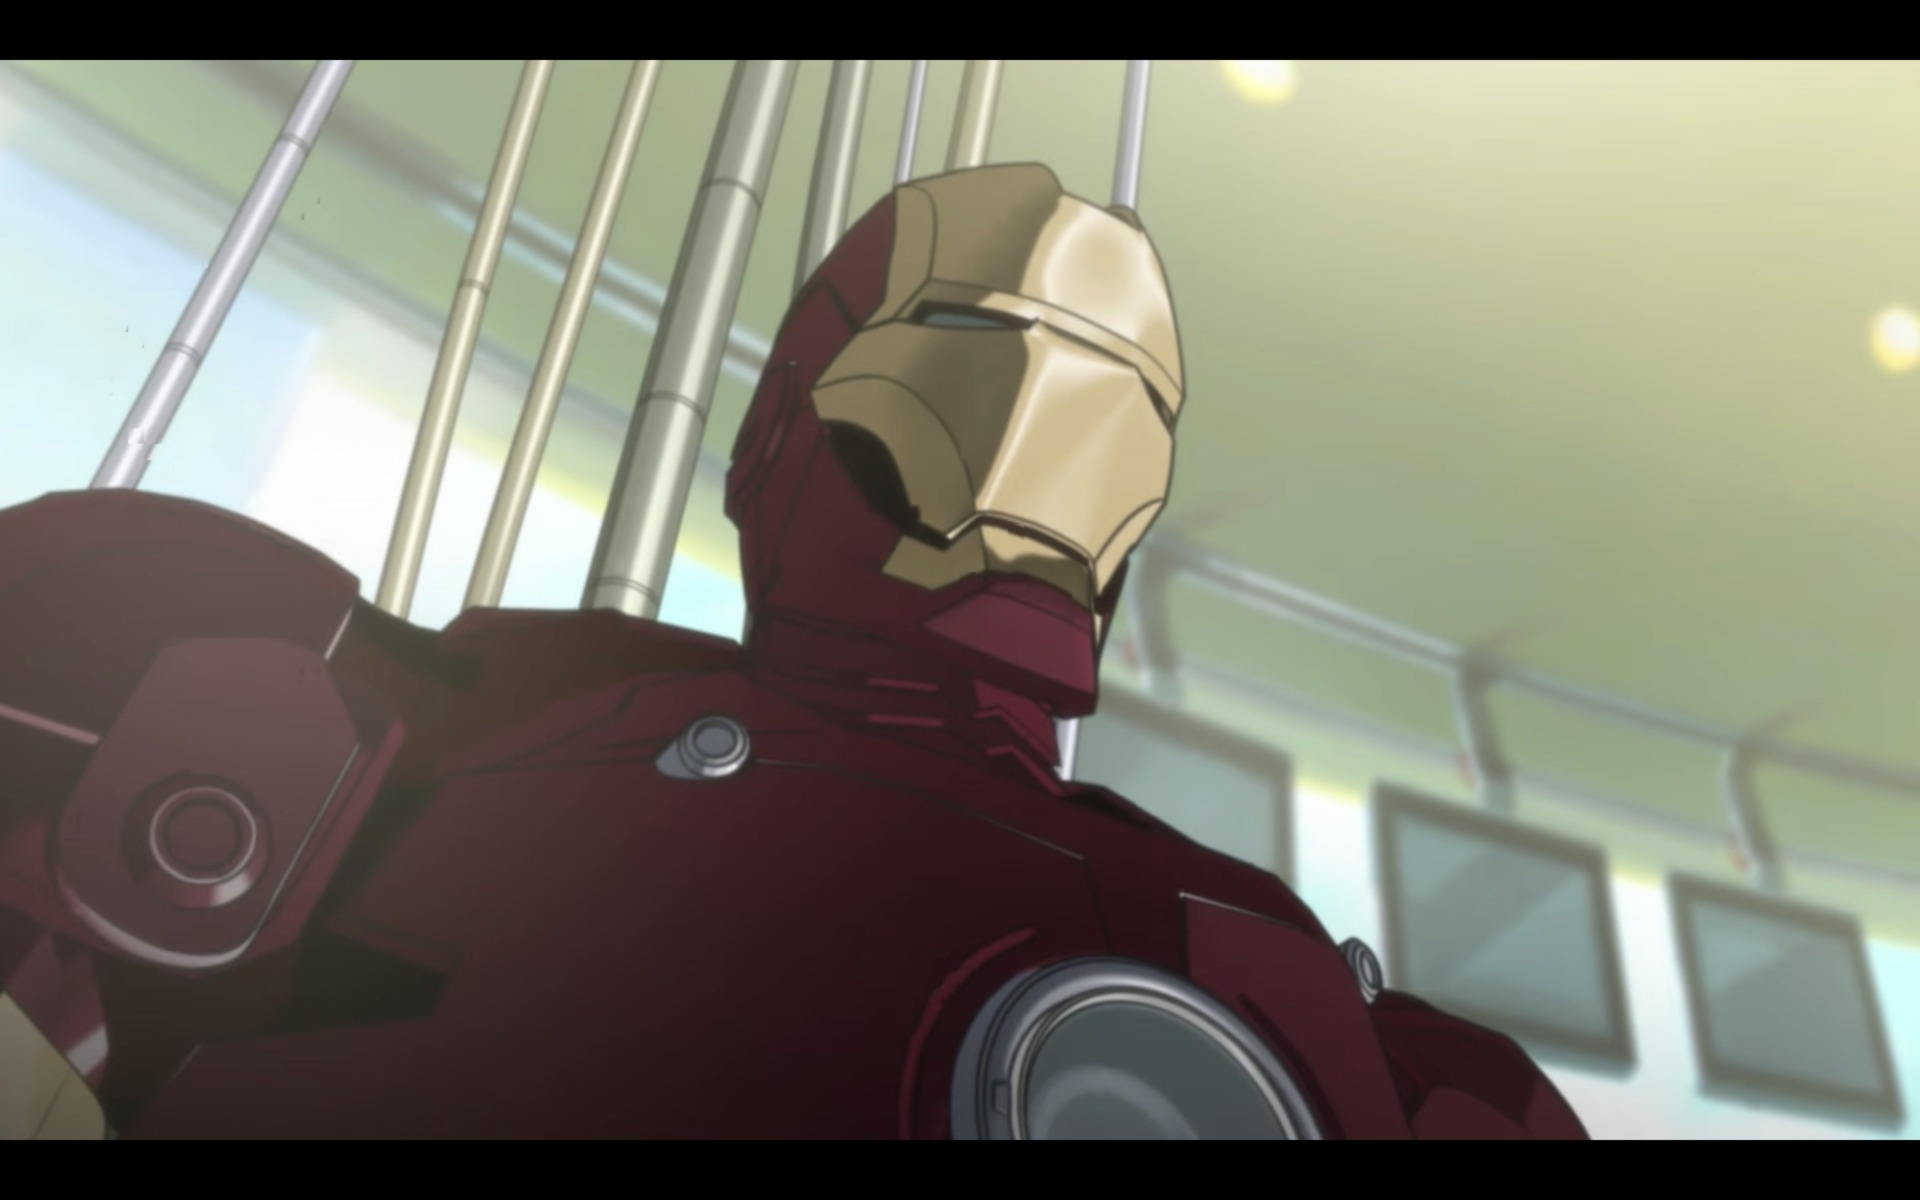 Iron Man Anime Episode Now on YouTube - Siliconera